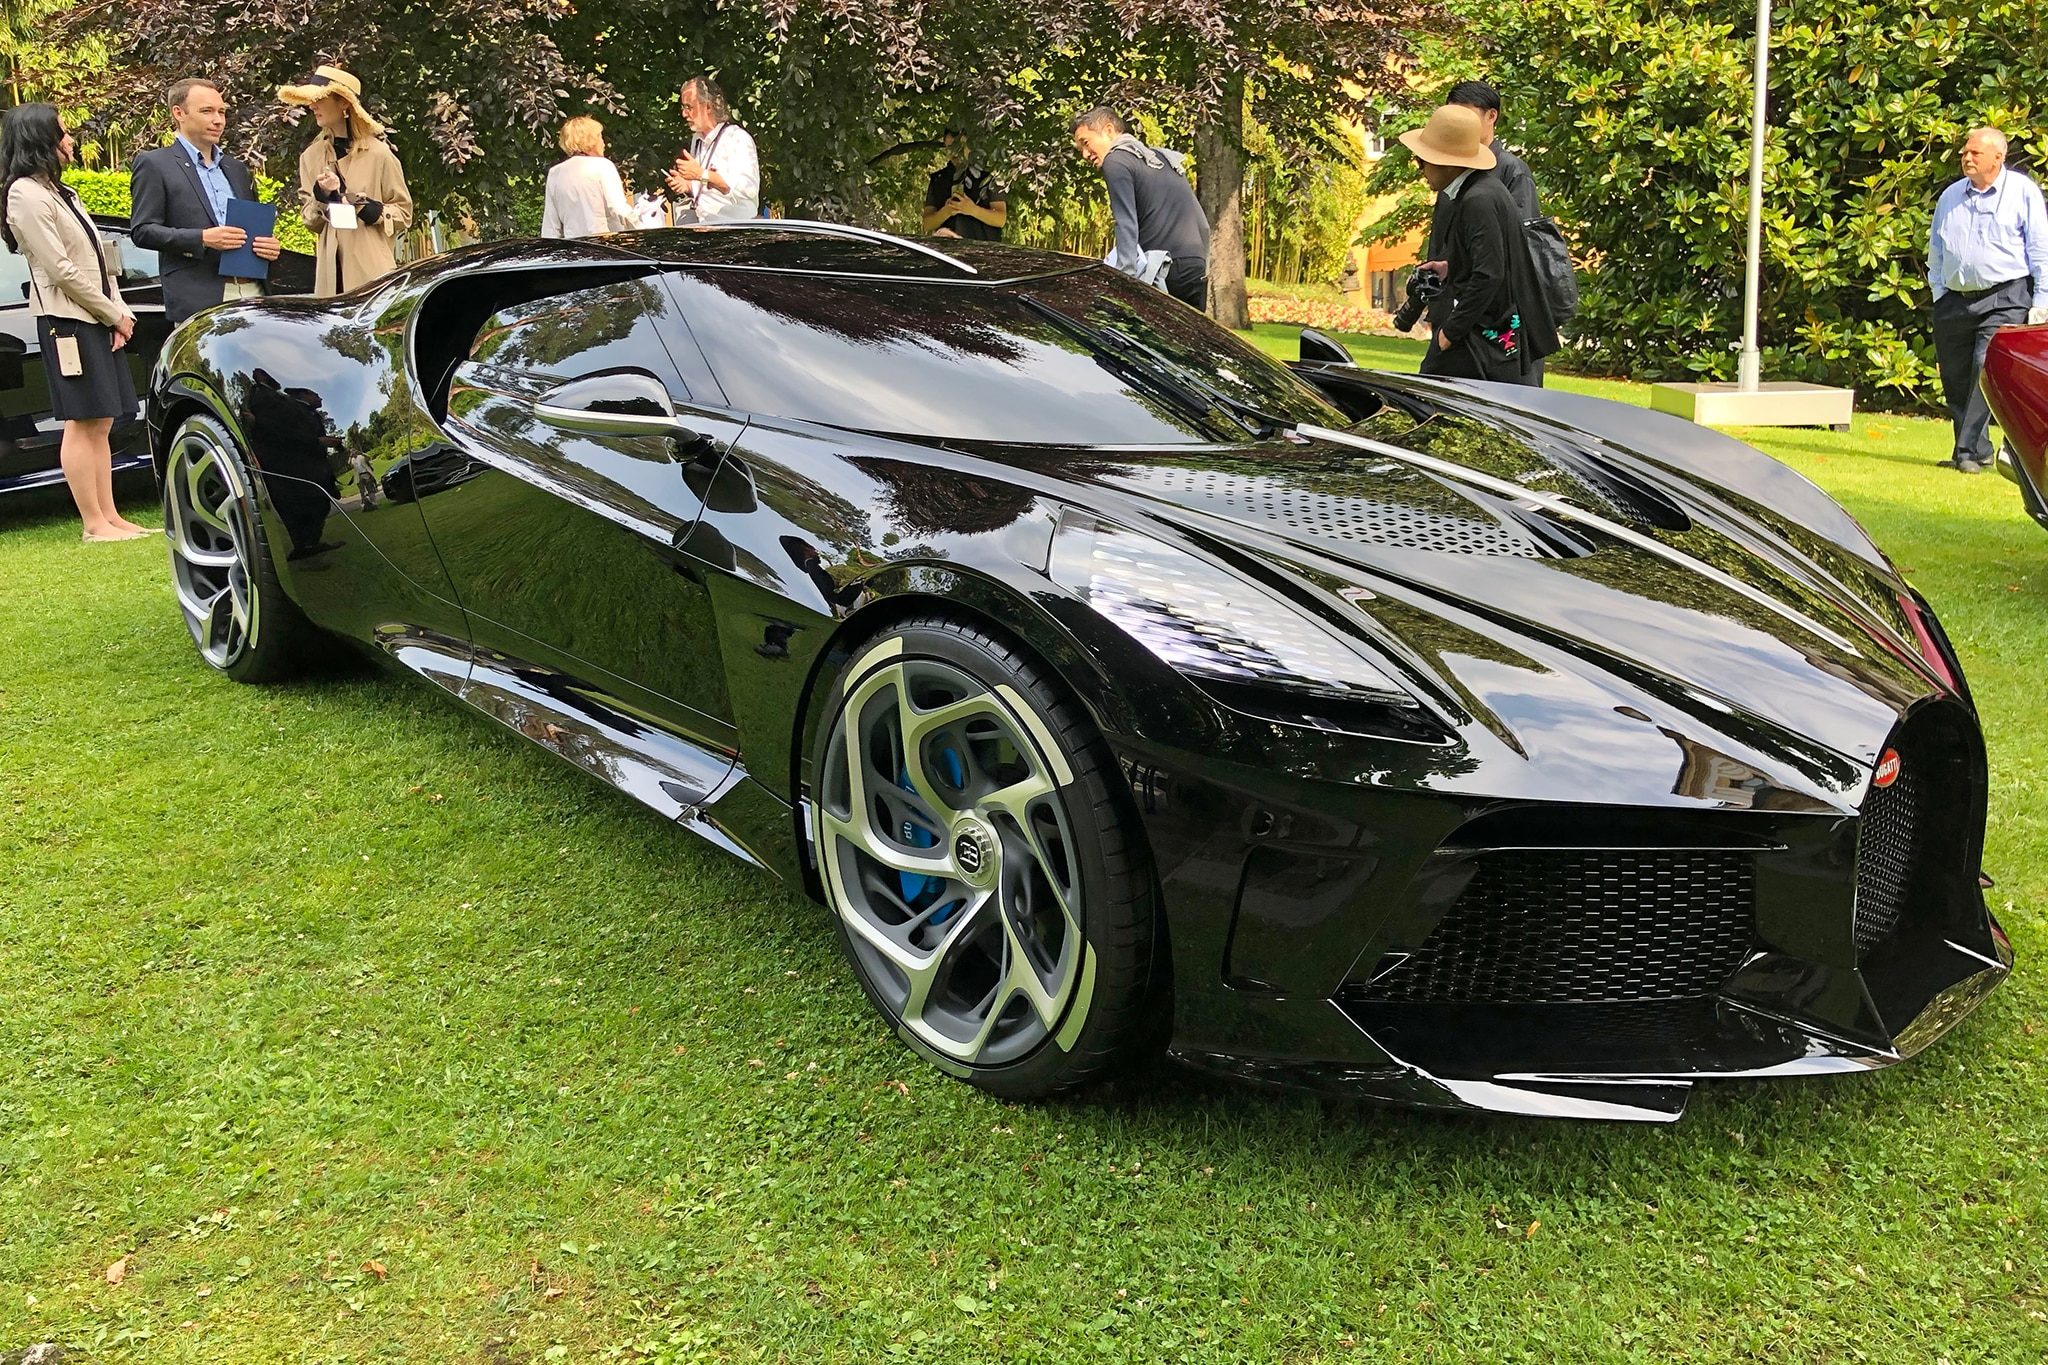 Bugatti-La-Voiture-Noir-at-Villa-d-Este-01.jpg